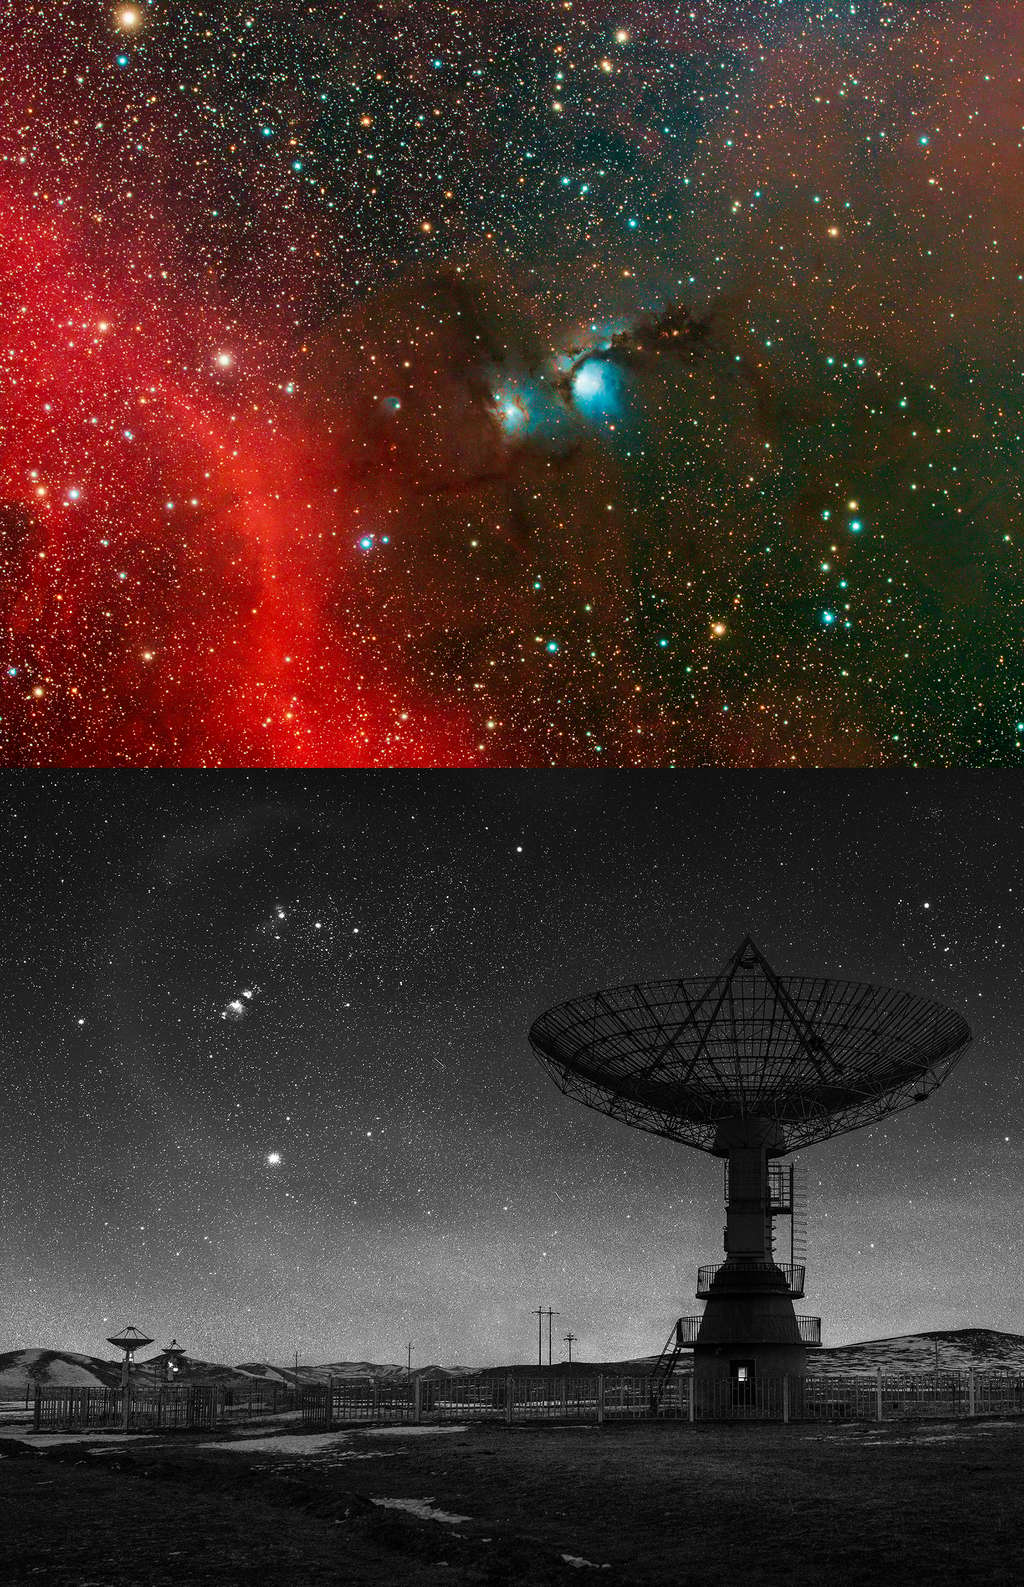 Le prix Sir Patrick Moore récompense les meilleurs « débutants », c’est-à-dire qui a débuté l’astro-photographie dans le courant de l’année 2021. Deux clichés sont en compétition.<br>Celui de David Loose (Blanco, Texas, États-Unis) et son image de Messier 78 qui comprend aussi les nébuleuses NGC 2064, NGC 2067 et NGC 2071.<br>La seconde image a été acquise par Liu Xuemei. Elle montre l’observatoire astronomique de Mingantu, situé dans la région autonome de Mongolie intérieure, en Chine.